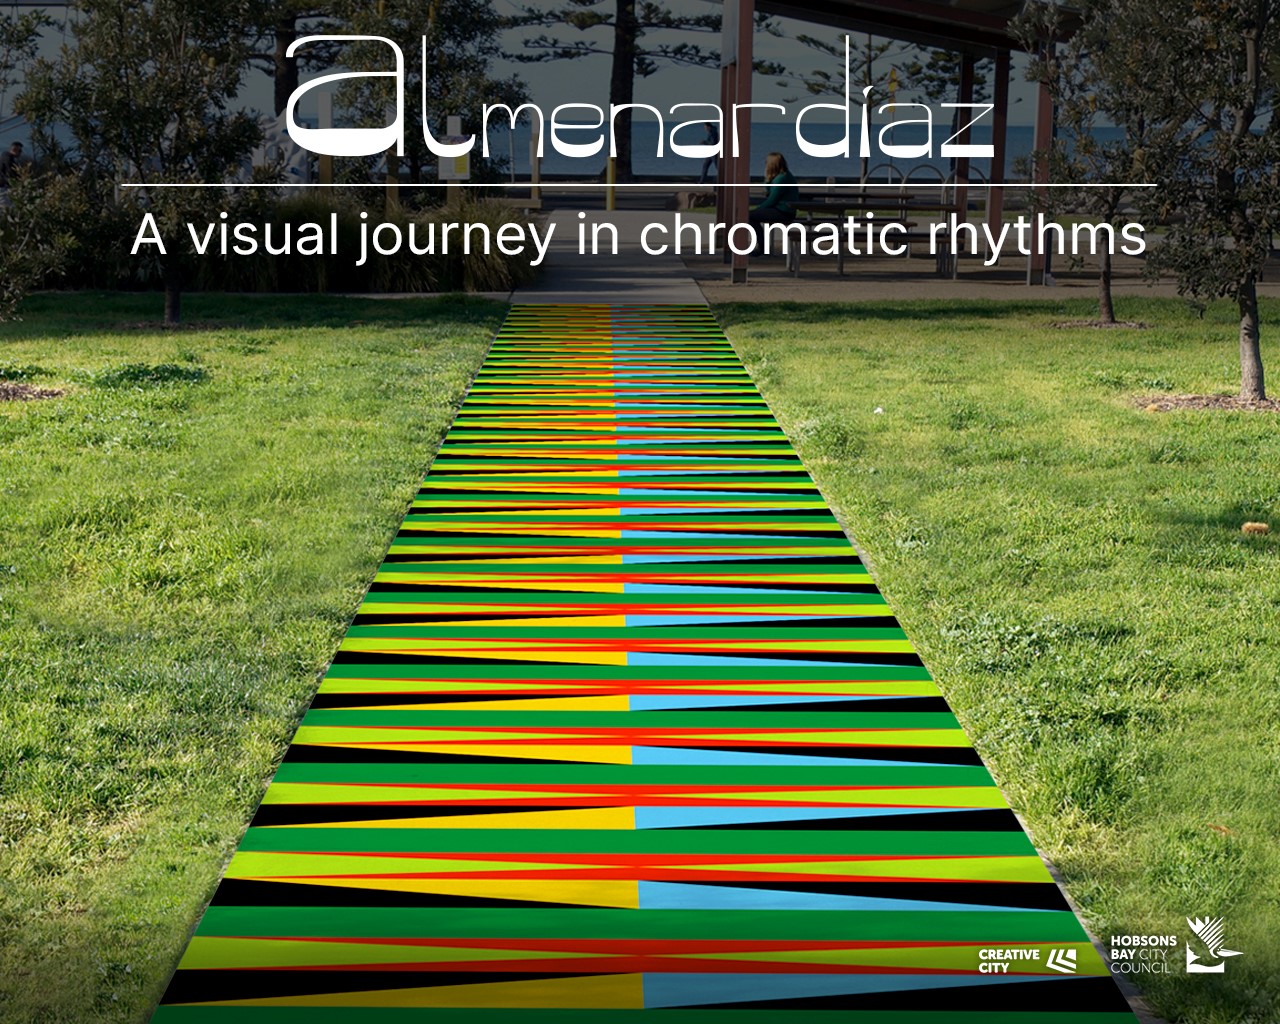 “A Visual Journey in Chromatic Rhythms” Temporary Public Art Project Carlos Almenar Diaz